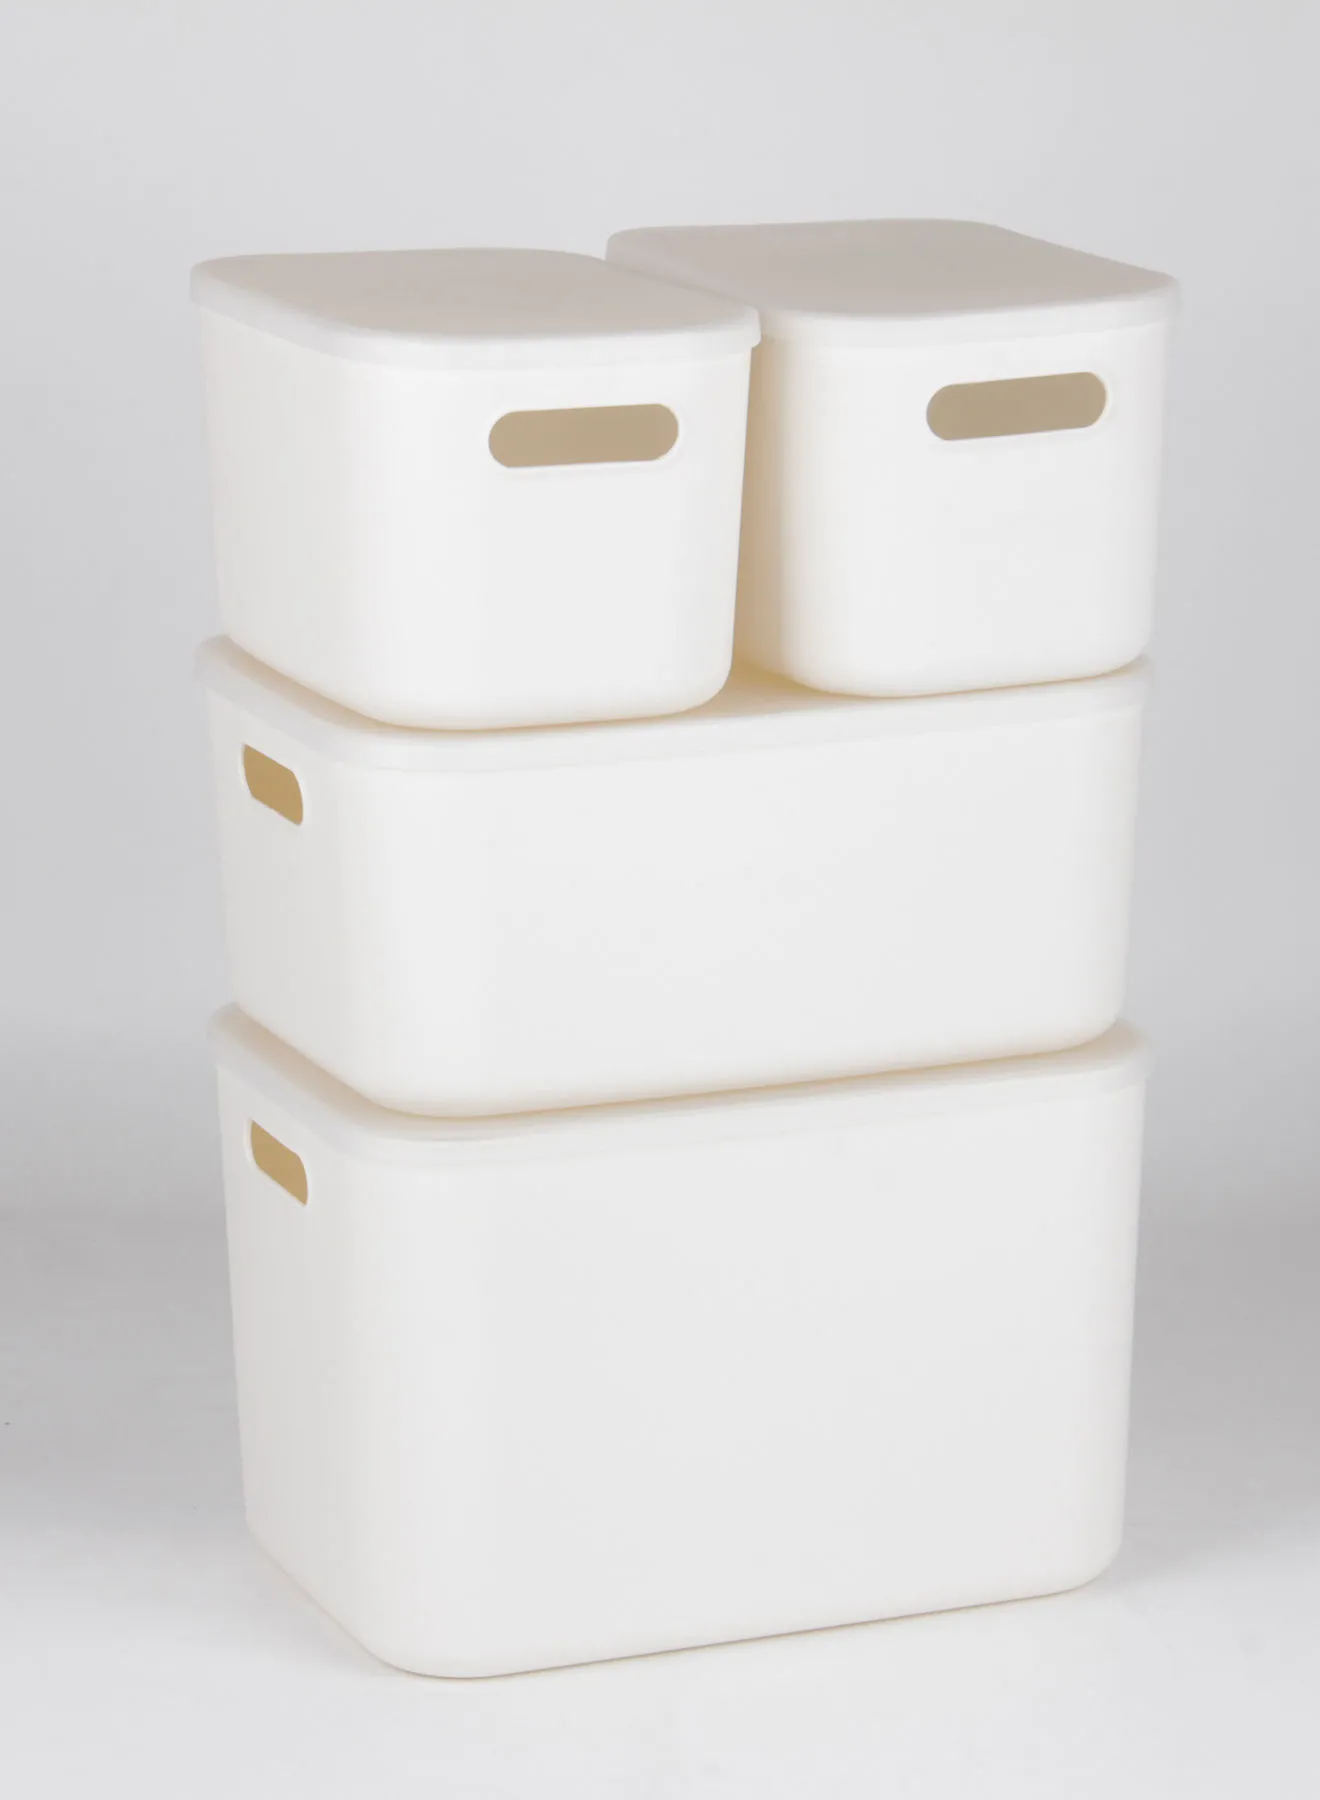 مجموعة حاويات تخزين من أمل مكونة من 4 قطع مريحة للاستخدام اليومي تخزين بسيط صحي ومنظم TG51291S4 أبيض 24 × 36 × 26 سم